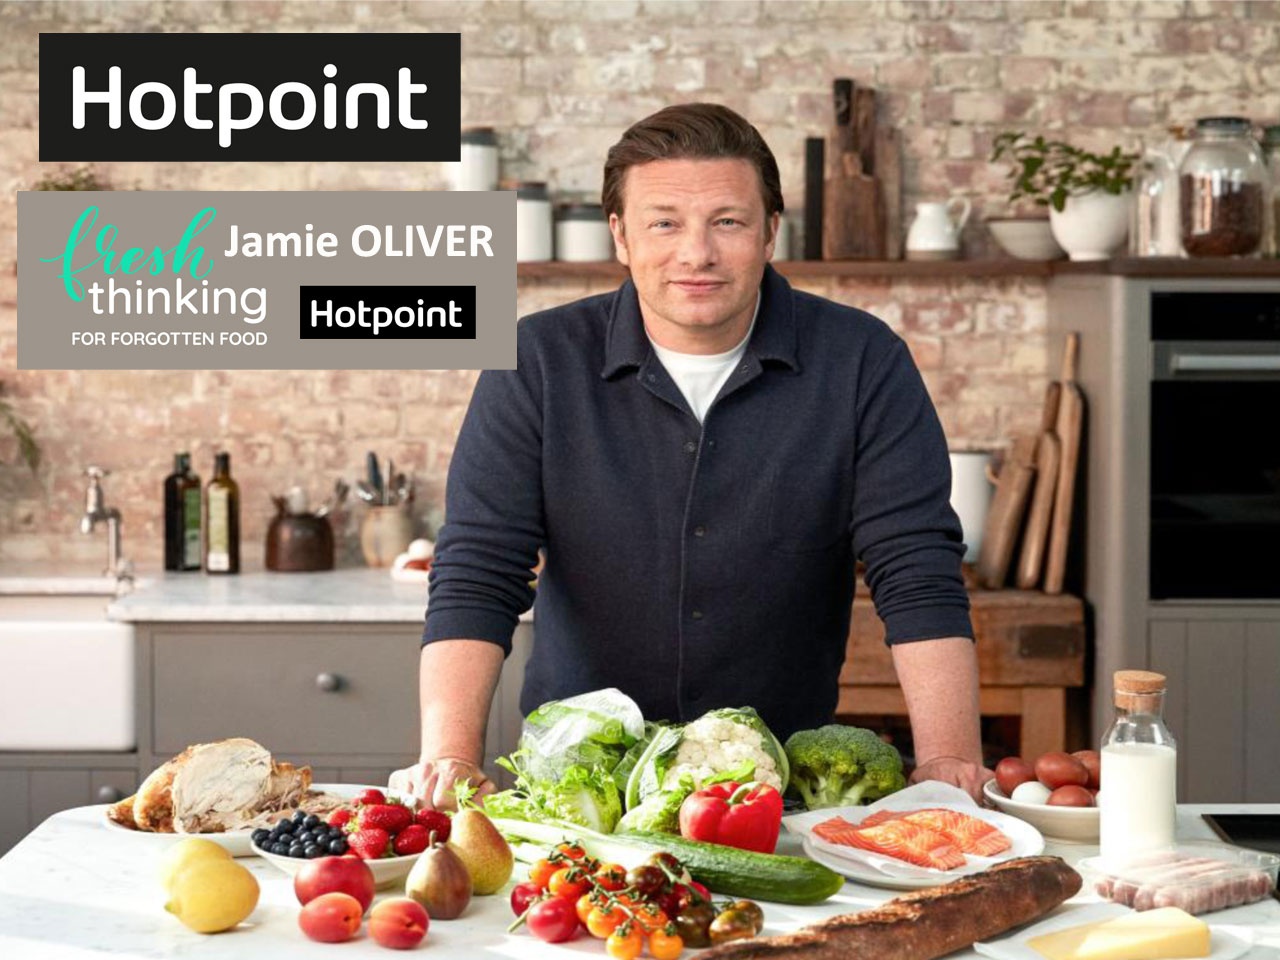 Hotpoint lance pour lutter contre le gaspillage « Fresh Thinking for Forgotten Food » avec le célèbre chef Jamie Oliver